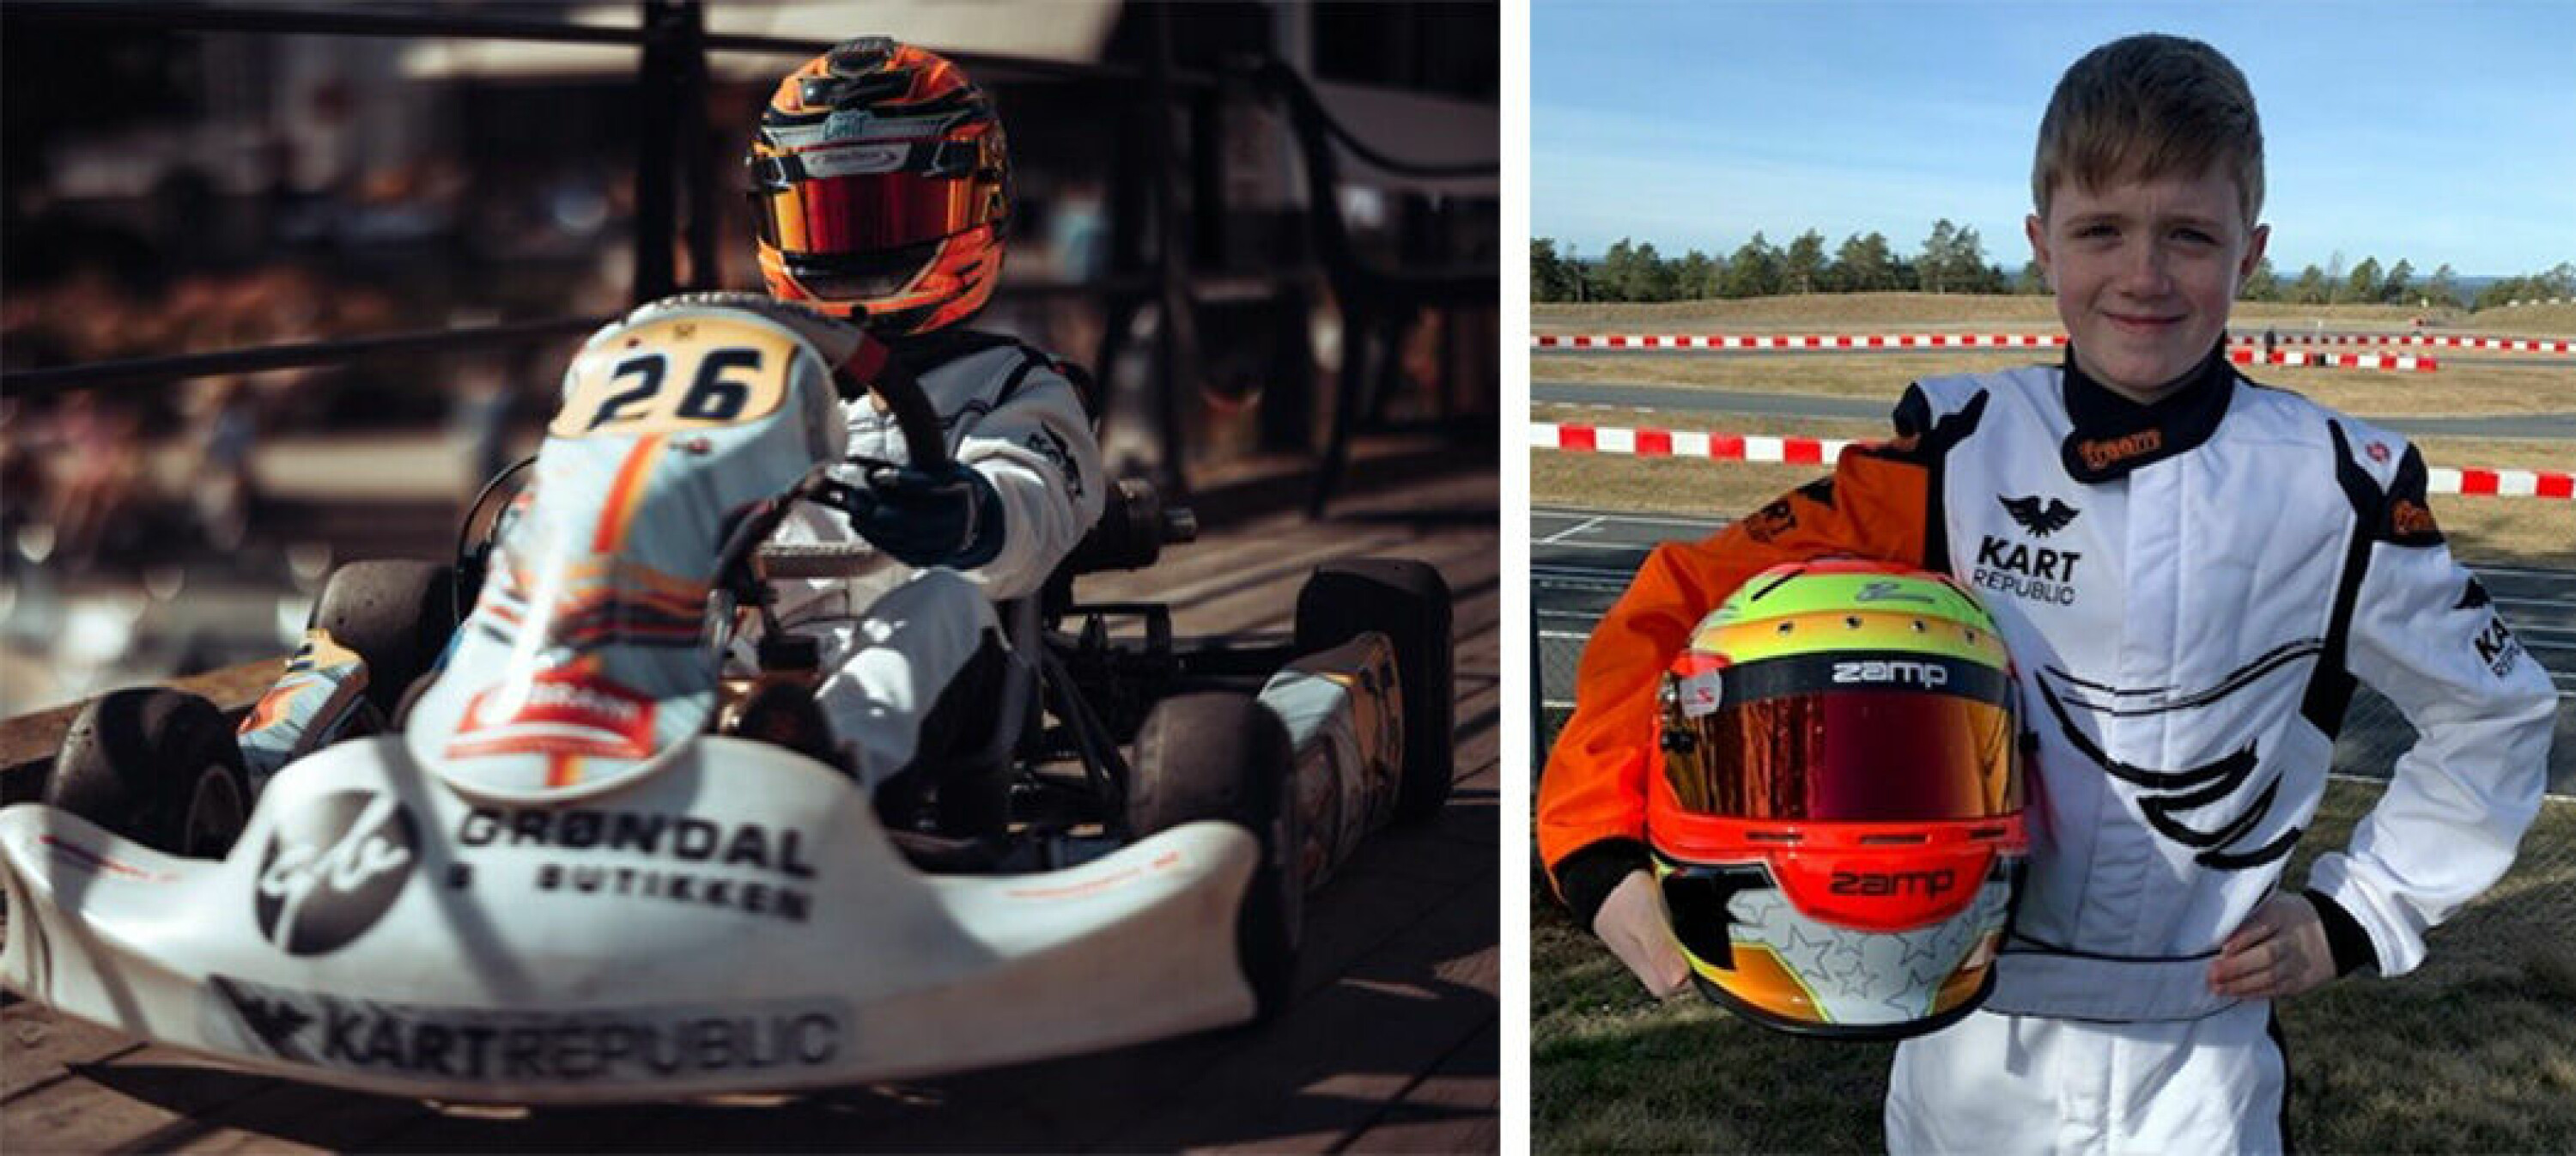 FARTSFANTOM: 11 år gamle Sebastian Grøndal-Eeles slekter på gode aner når det gjelder racing og har allerede fått muilgheten til å konkurrere internasjonalt.